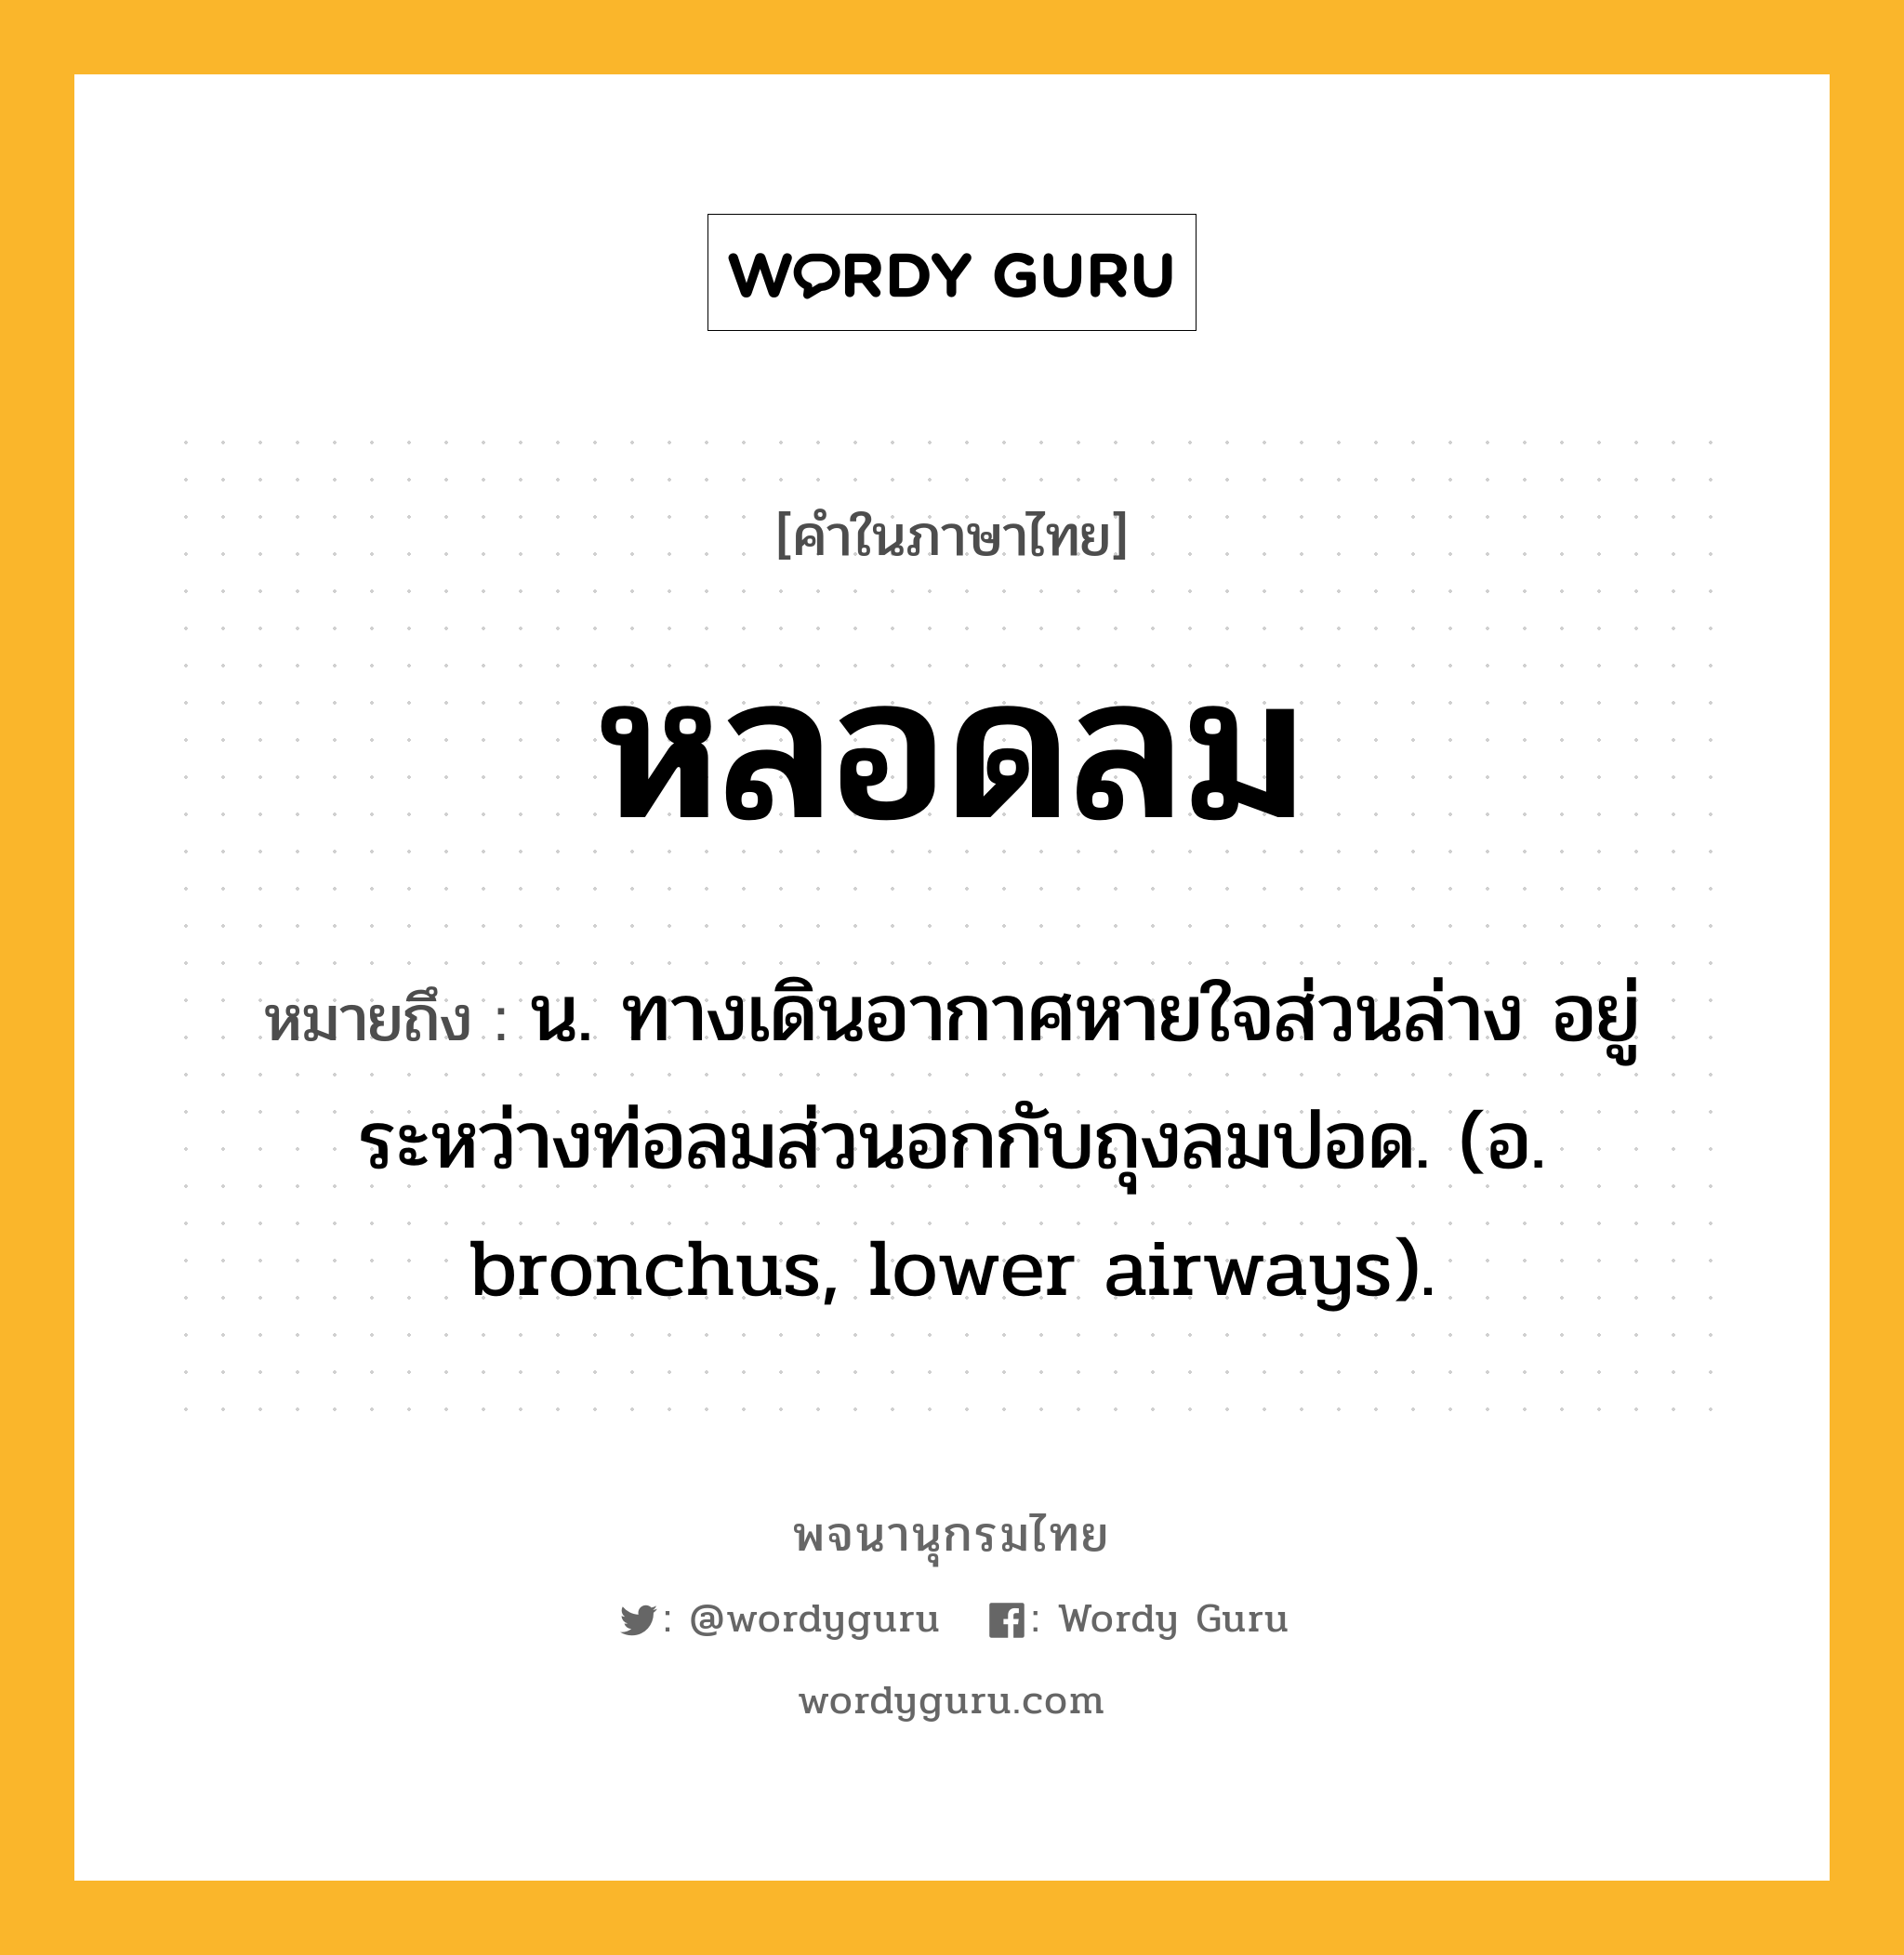 หลอดลม หมายถึงอะไร?, คำในภาษาไทย หลอดลม หมายถึง น. ทางเดินอากาศหายใจส่วนล่าง อยู่ระหว่างท่อลมส่วนอกกับถุงลมปอด. (อ. bronchus, lower airways).